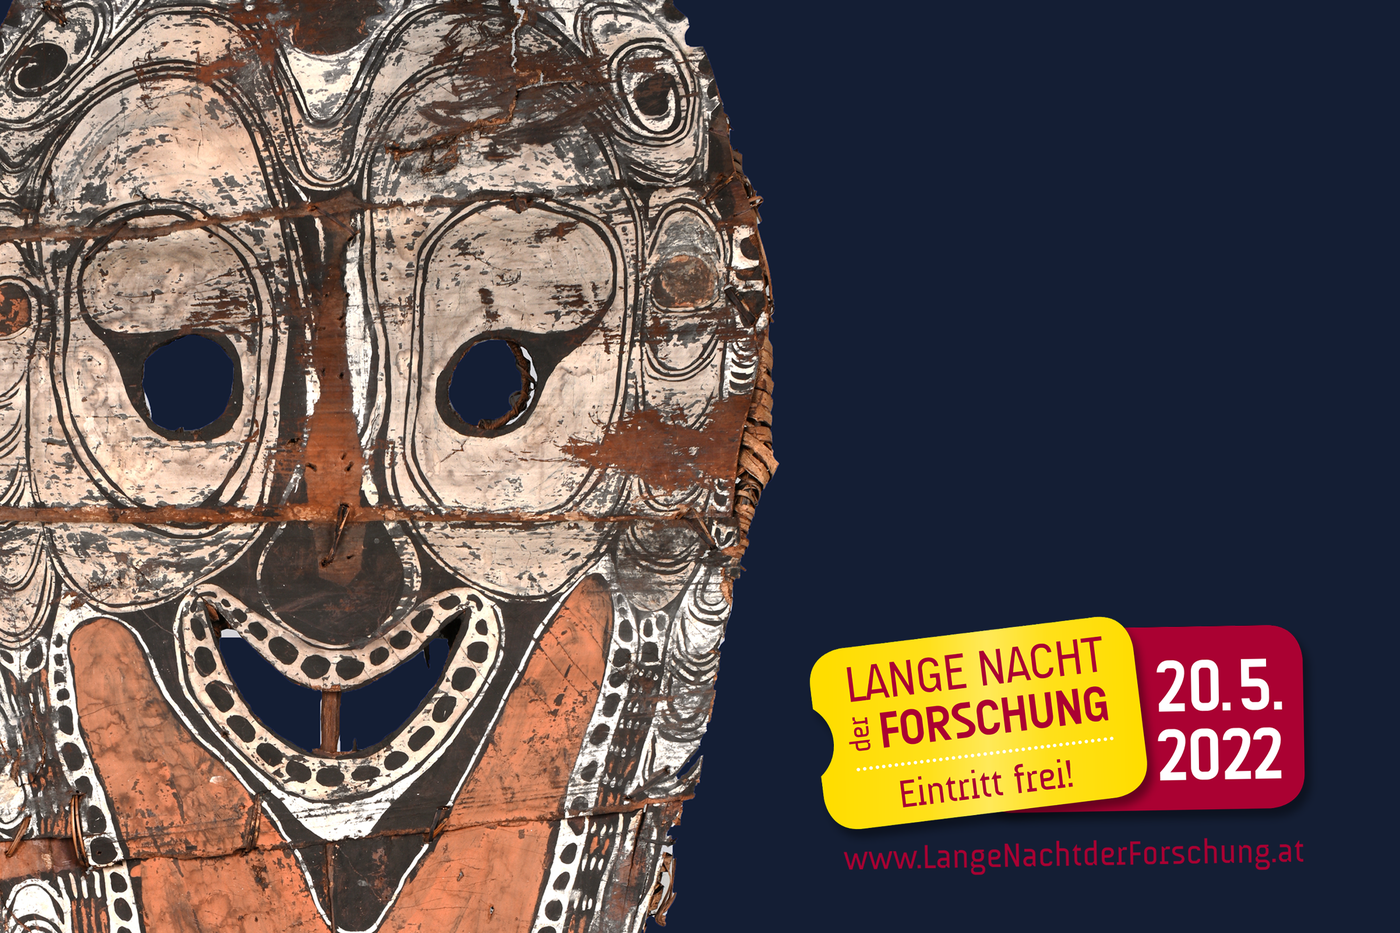 Flyer für die lange Nacht der Forschung 2022 mit Giebelmaske aus Papua Neu-Guinea auf blauem Hintergrund und Logo der Langen Nacht der Forschung